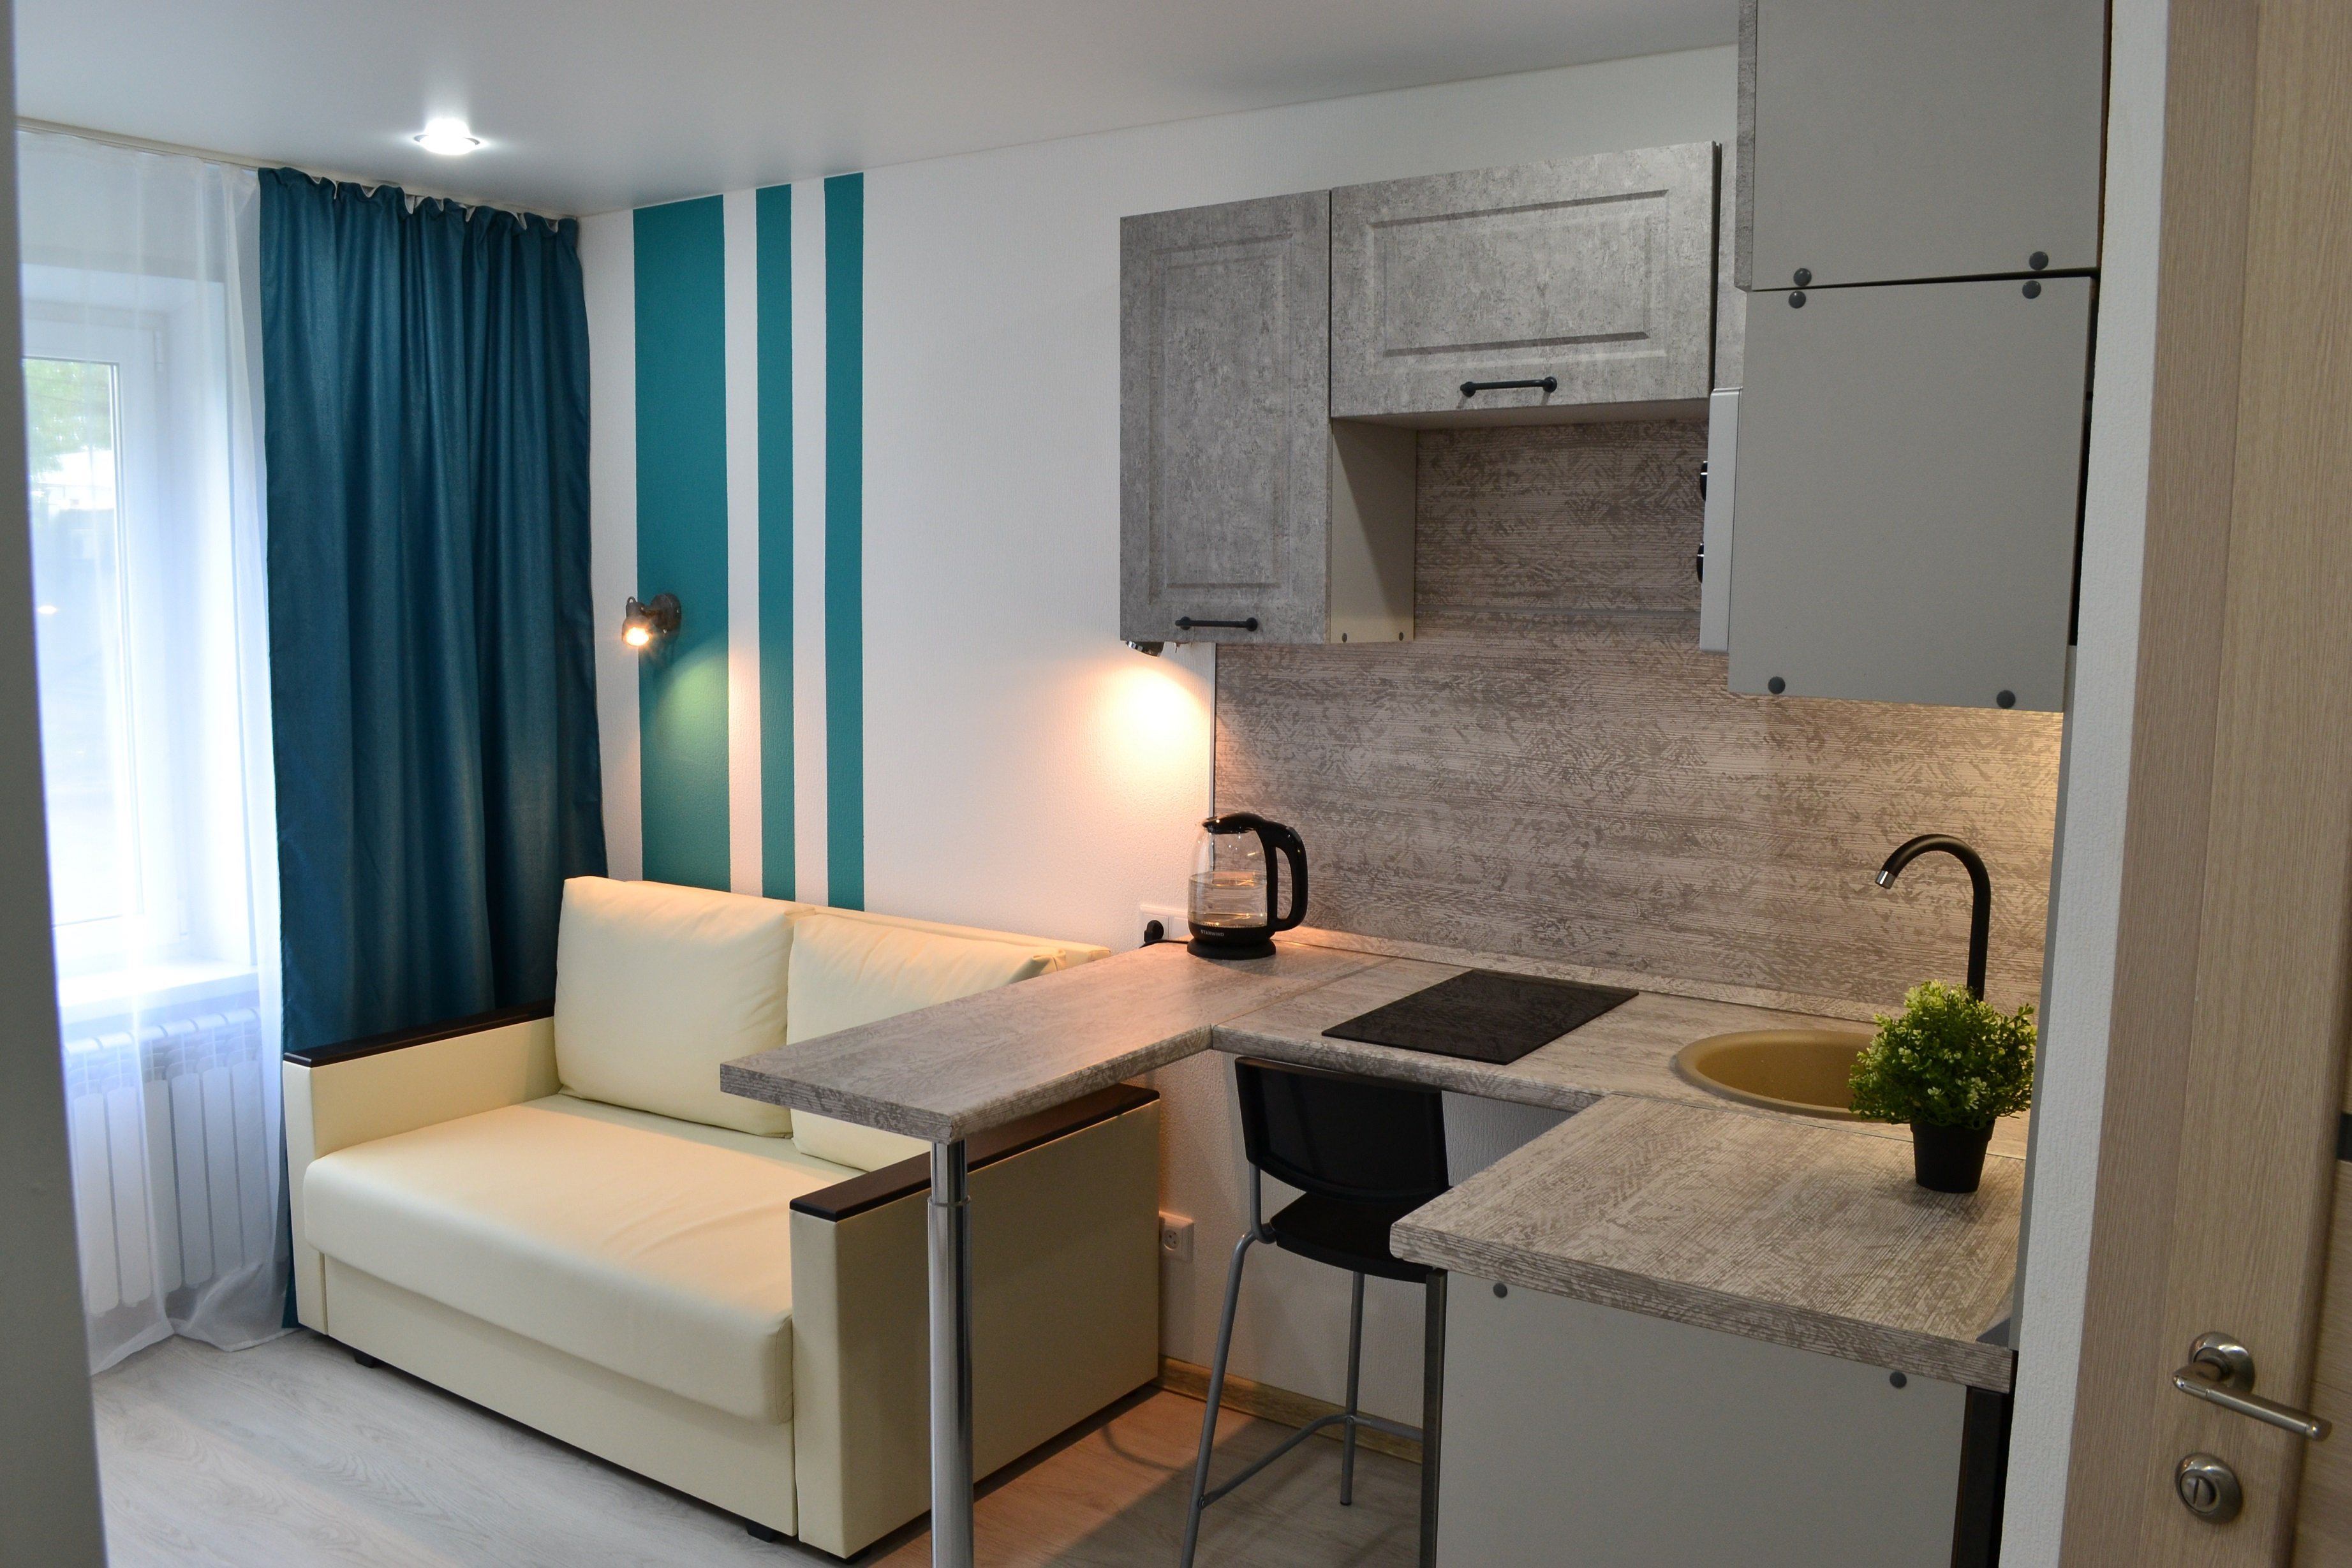 Дизайн комнаты в общежитии: 75 идей обустройства | Квартирные идеи, Интерьер, Домашний декор